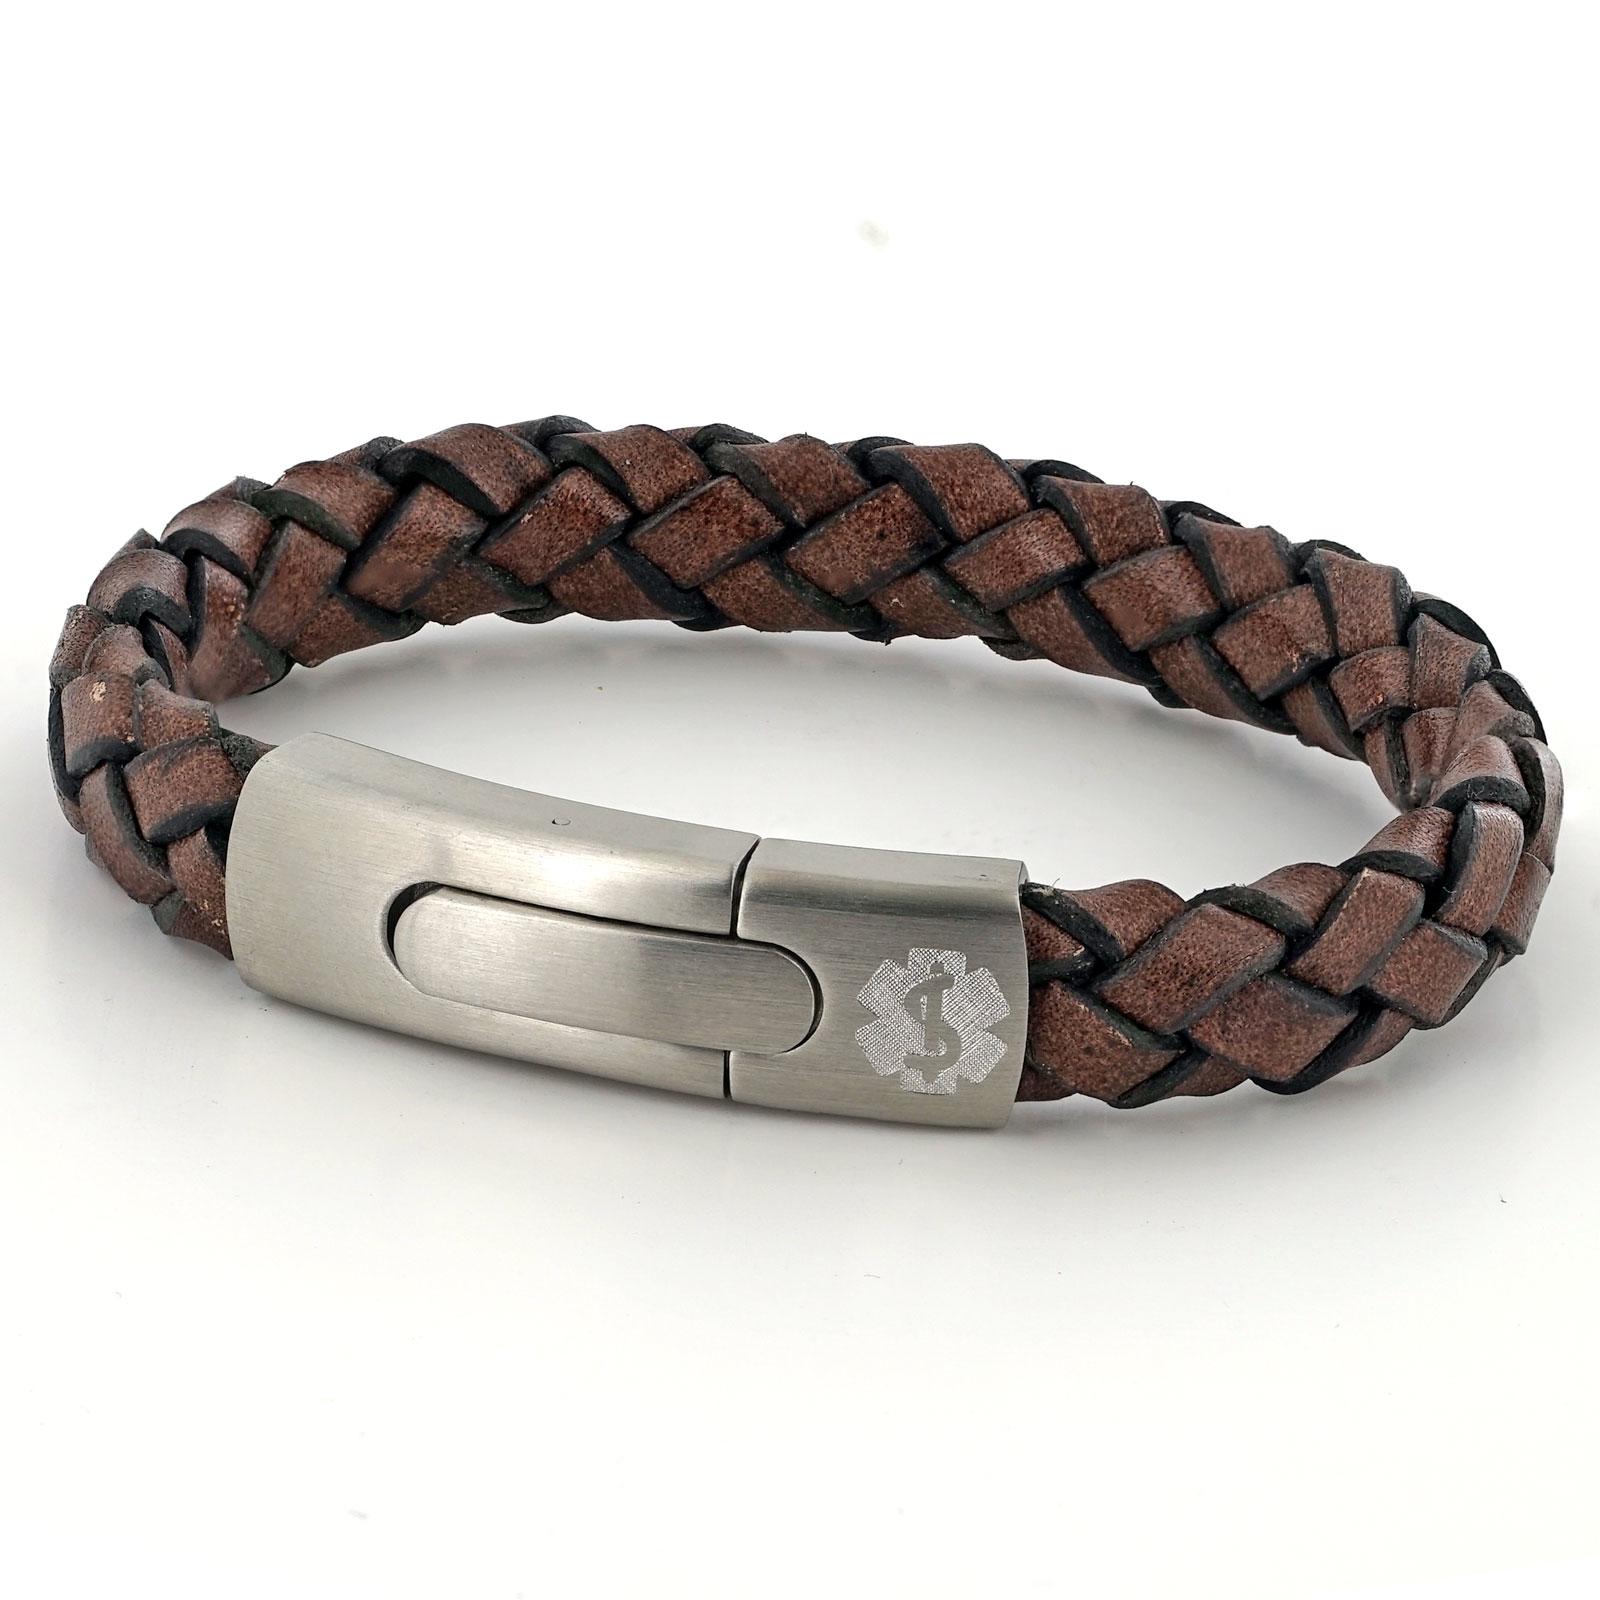 Vintage Leather Hidden Conditions Medical Alert Bracelet